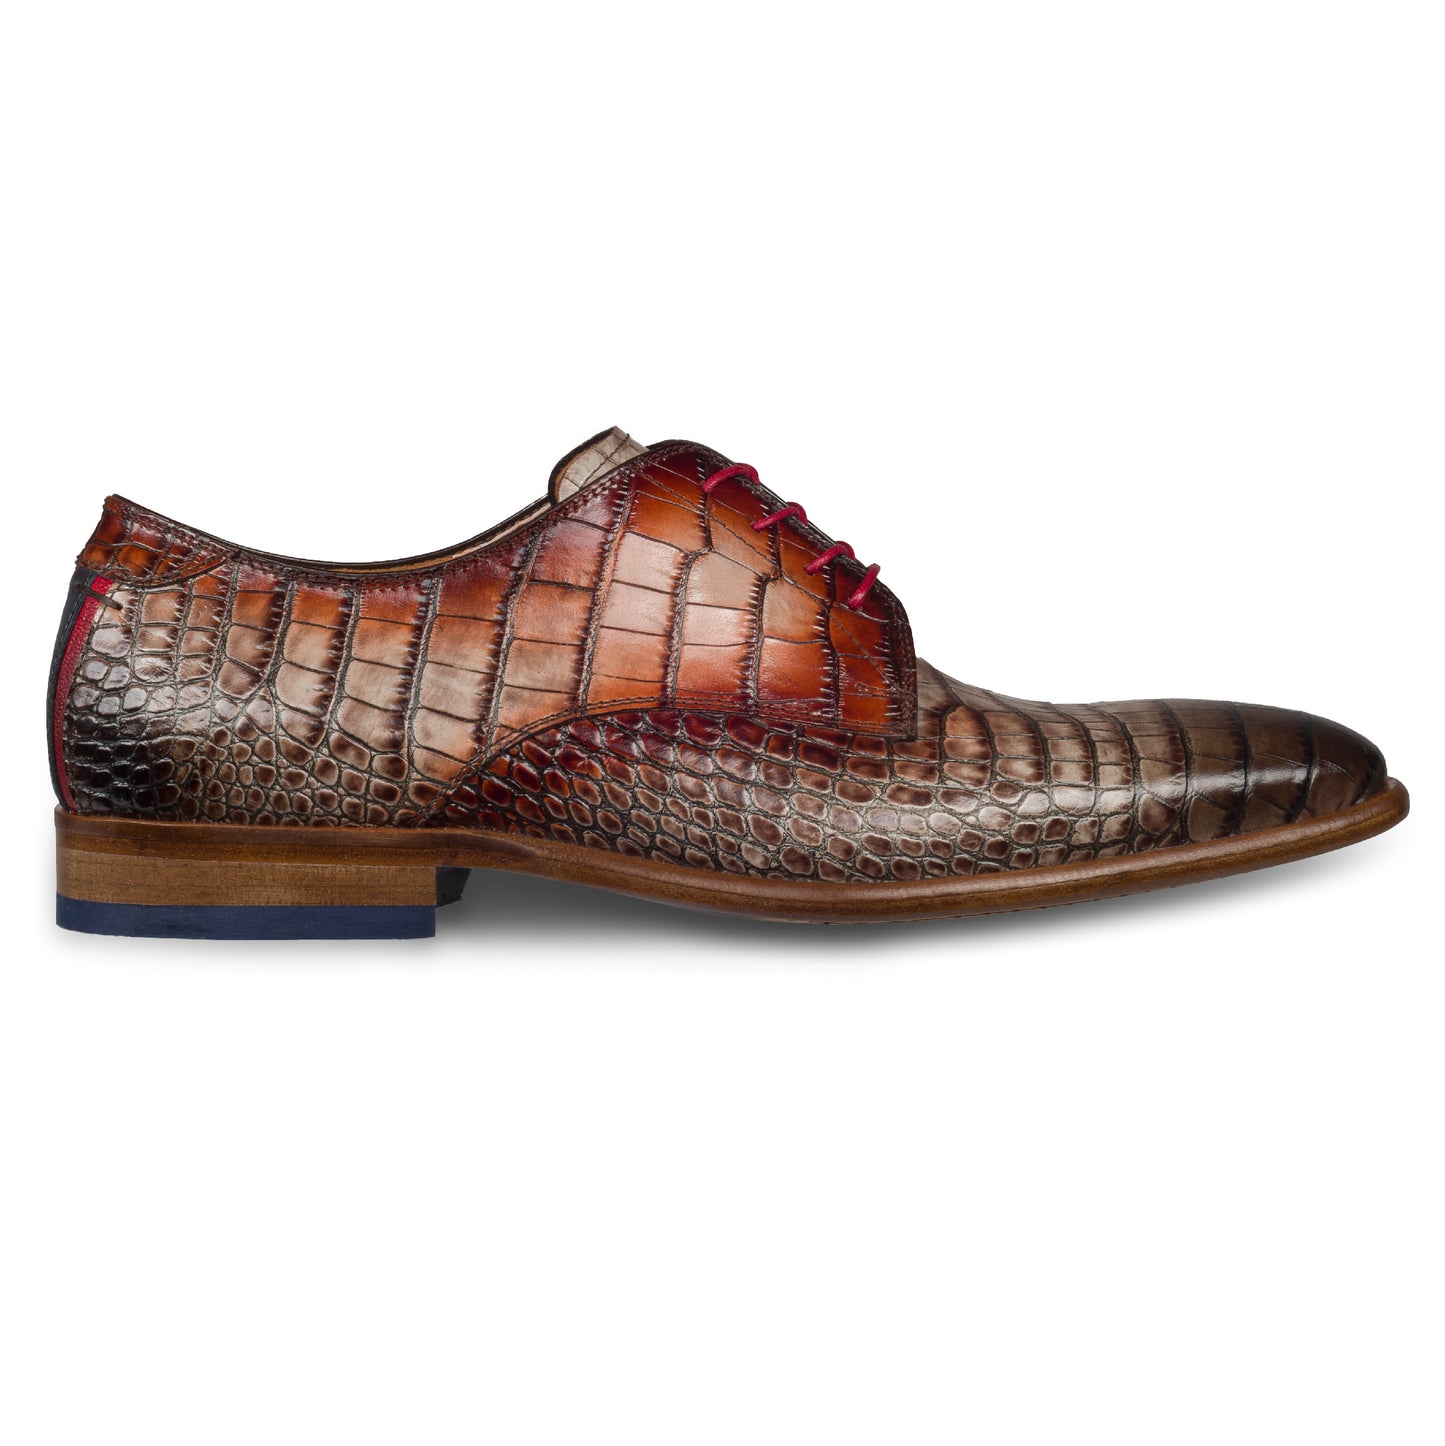 Lorenzi - Extravaganter Herren Derby Schnürschuh aus Kalbsleder in Reptil-Optik schwarz-grau/rot. Handgefertigt und Durchgenäht. Seitliche Ansicht der Außenseite rechter Schuh.